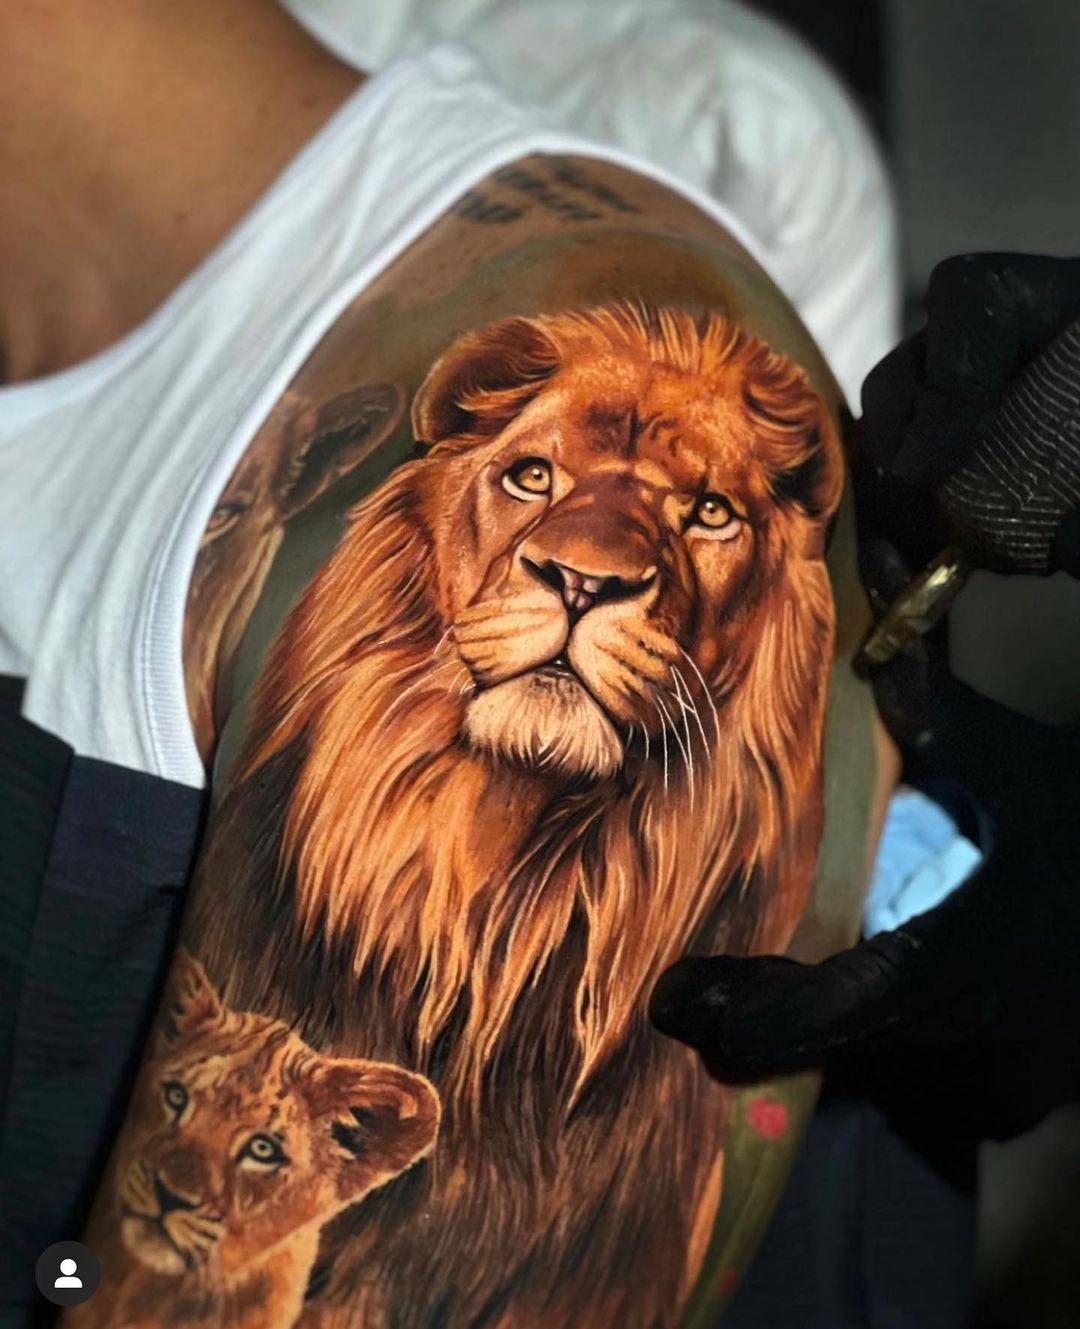 Realistic Lion Tattoo by @chrisdrtstattoo done in Austin, TX #liontattoo  #austintx #tattoo | Instagram